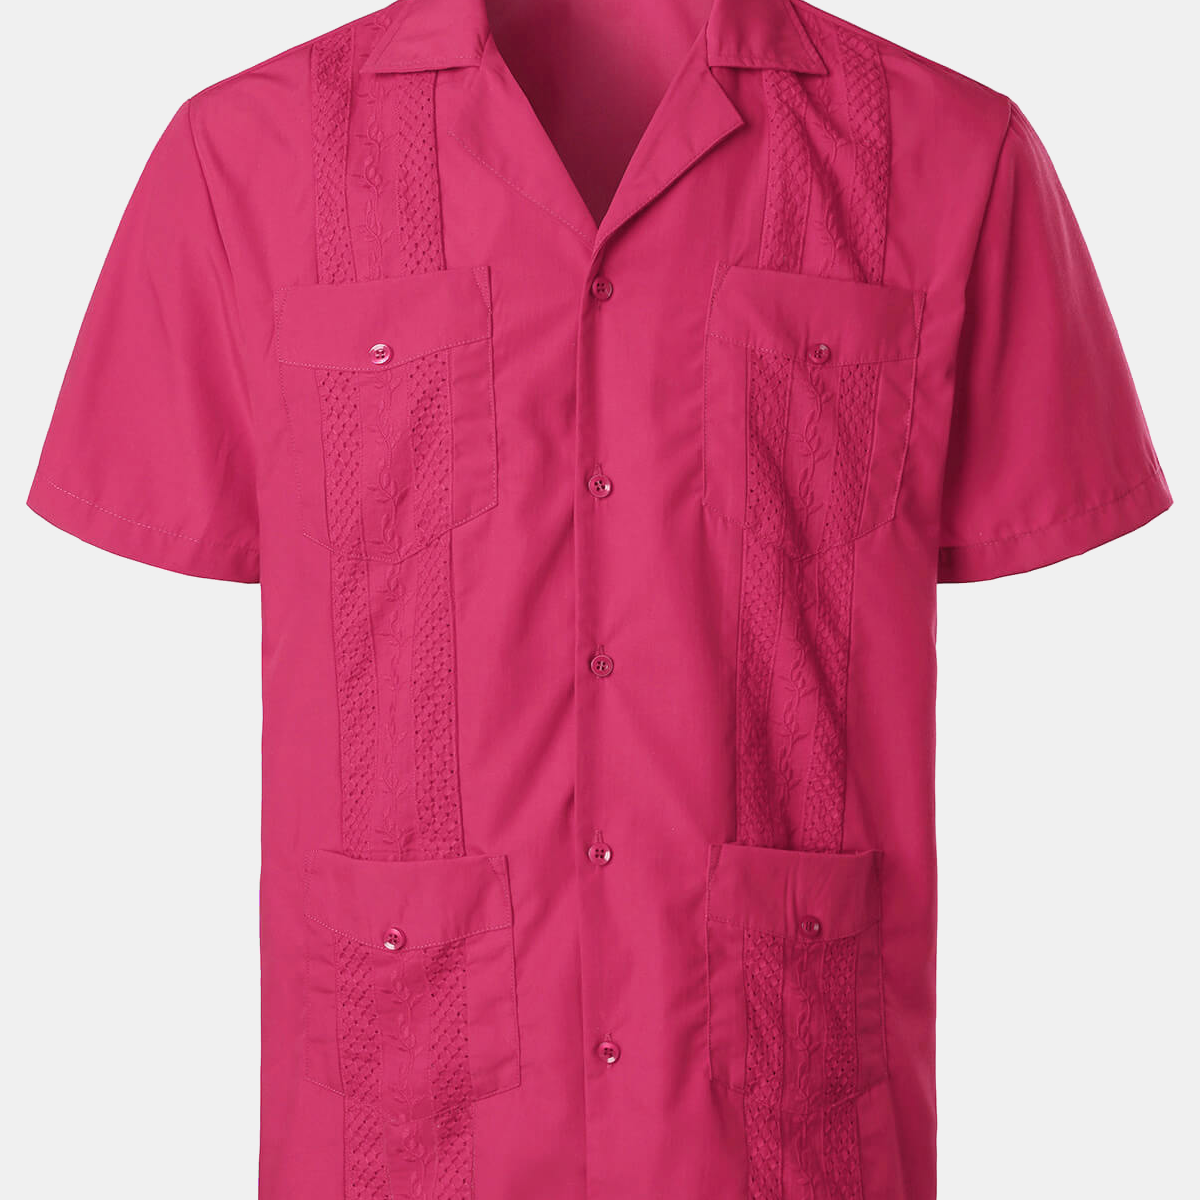 Men's Summer Cool Embroidery Cuban Guayabera Short Sleeve Button Up Beach Shirt